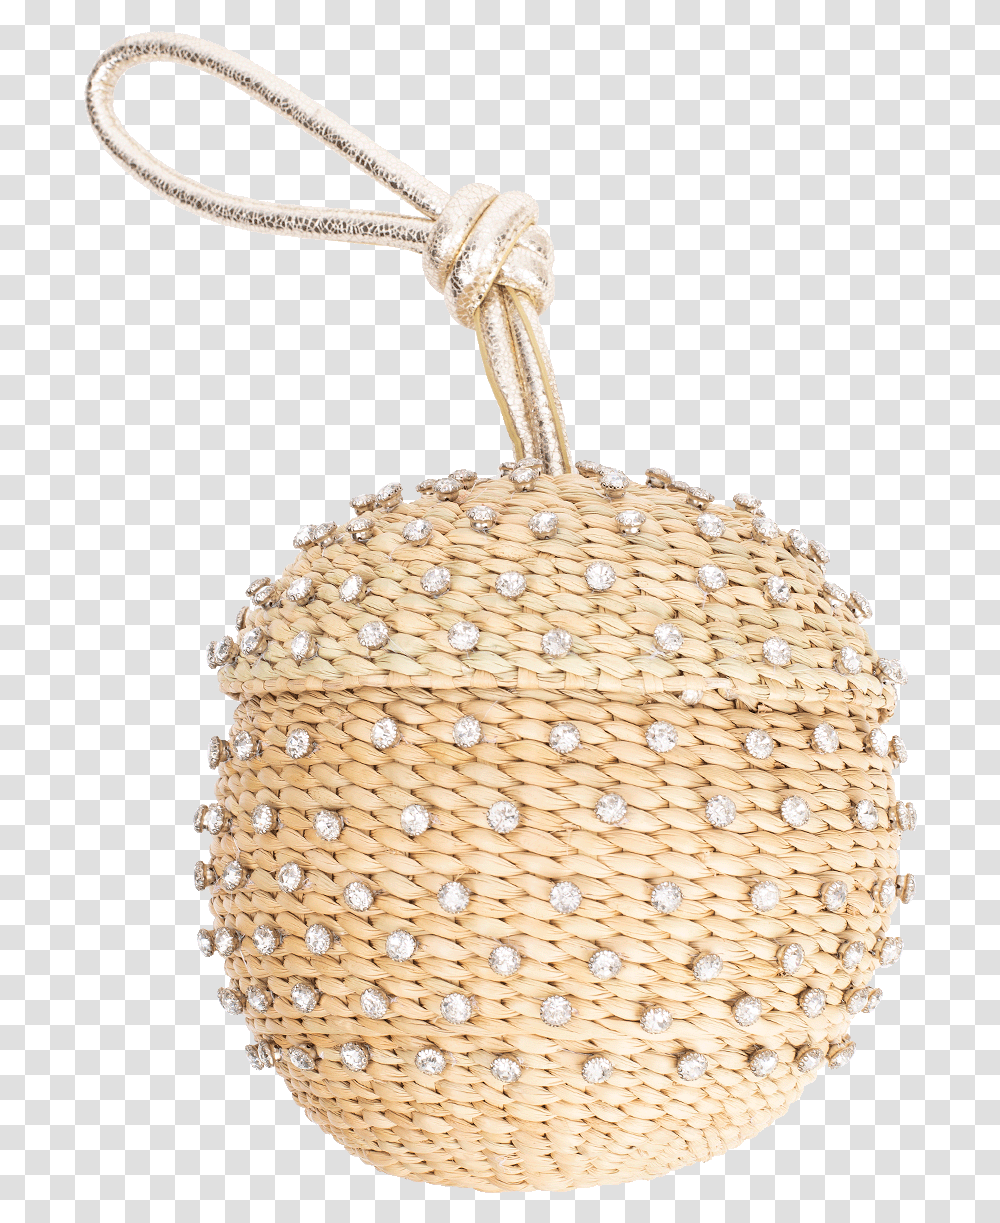 Standard Deviation, Basket, Woven Transparent Png